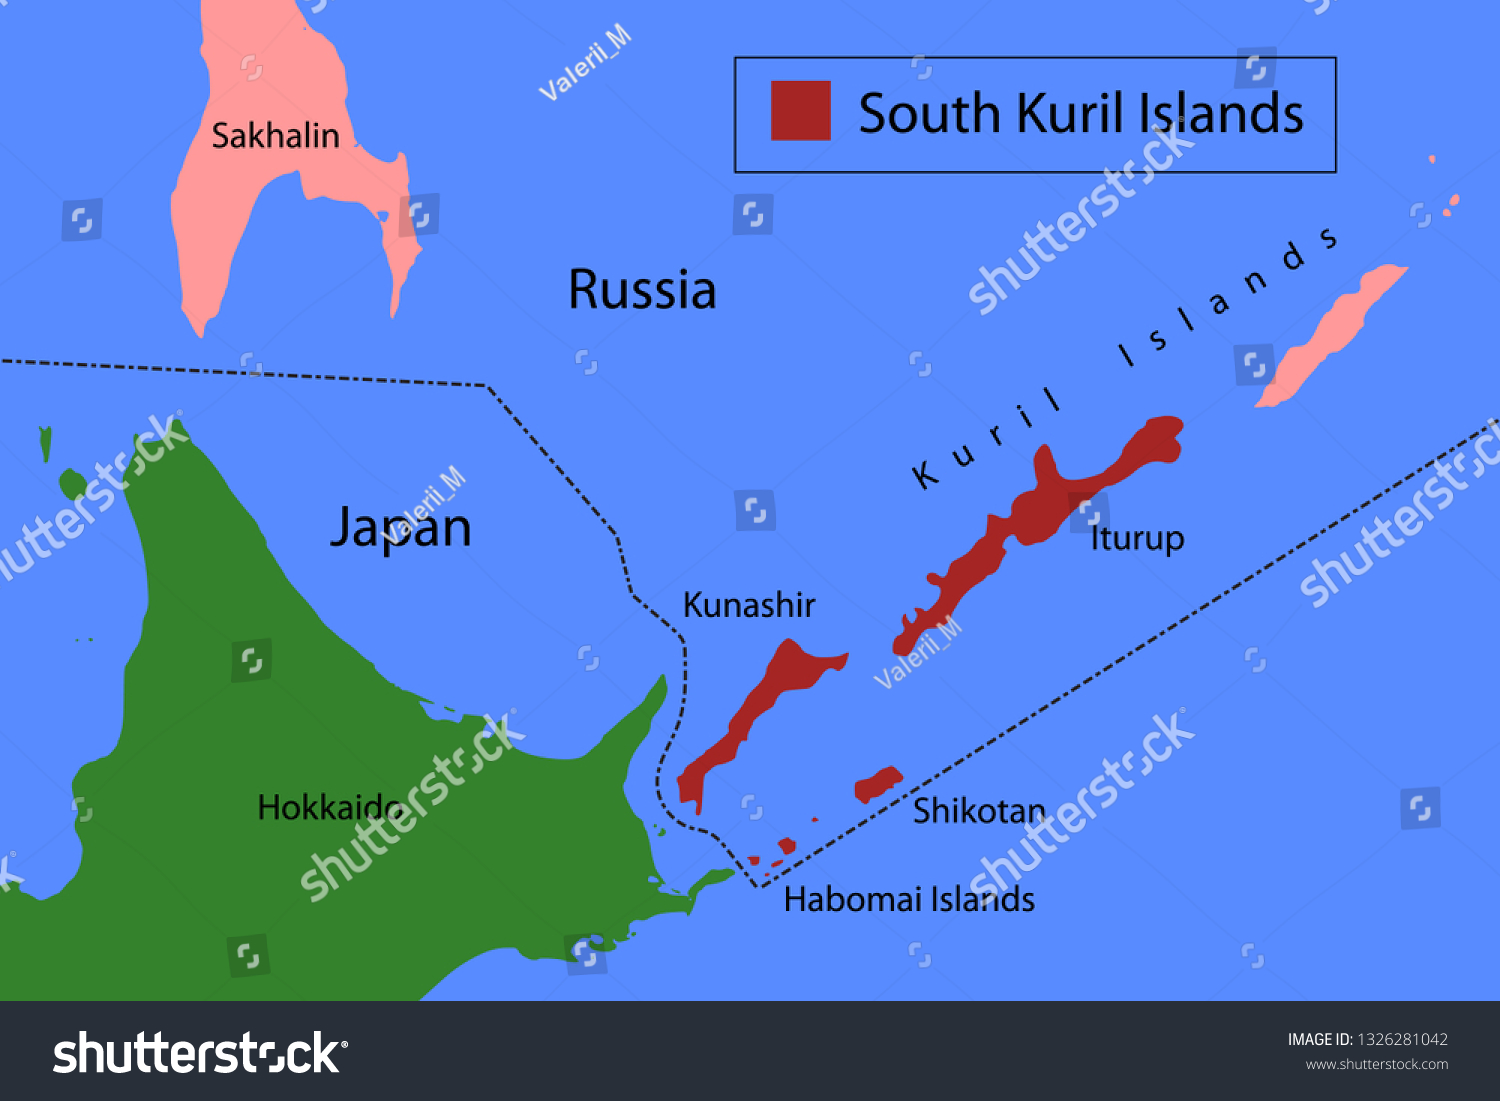 Kuril Islands dispute